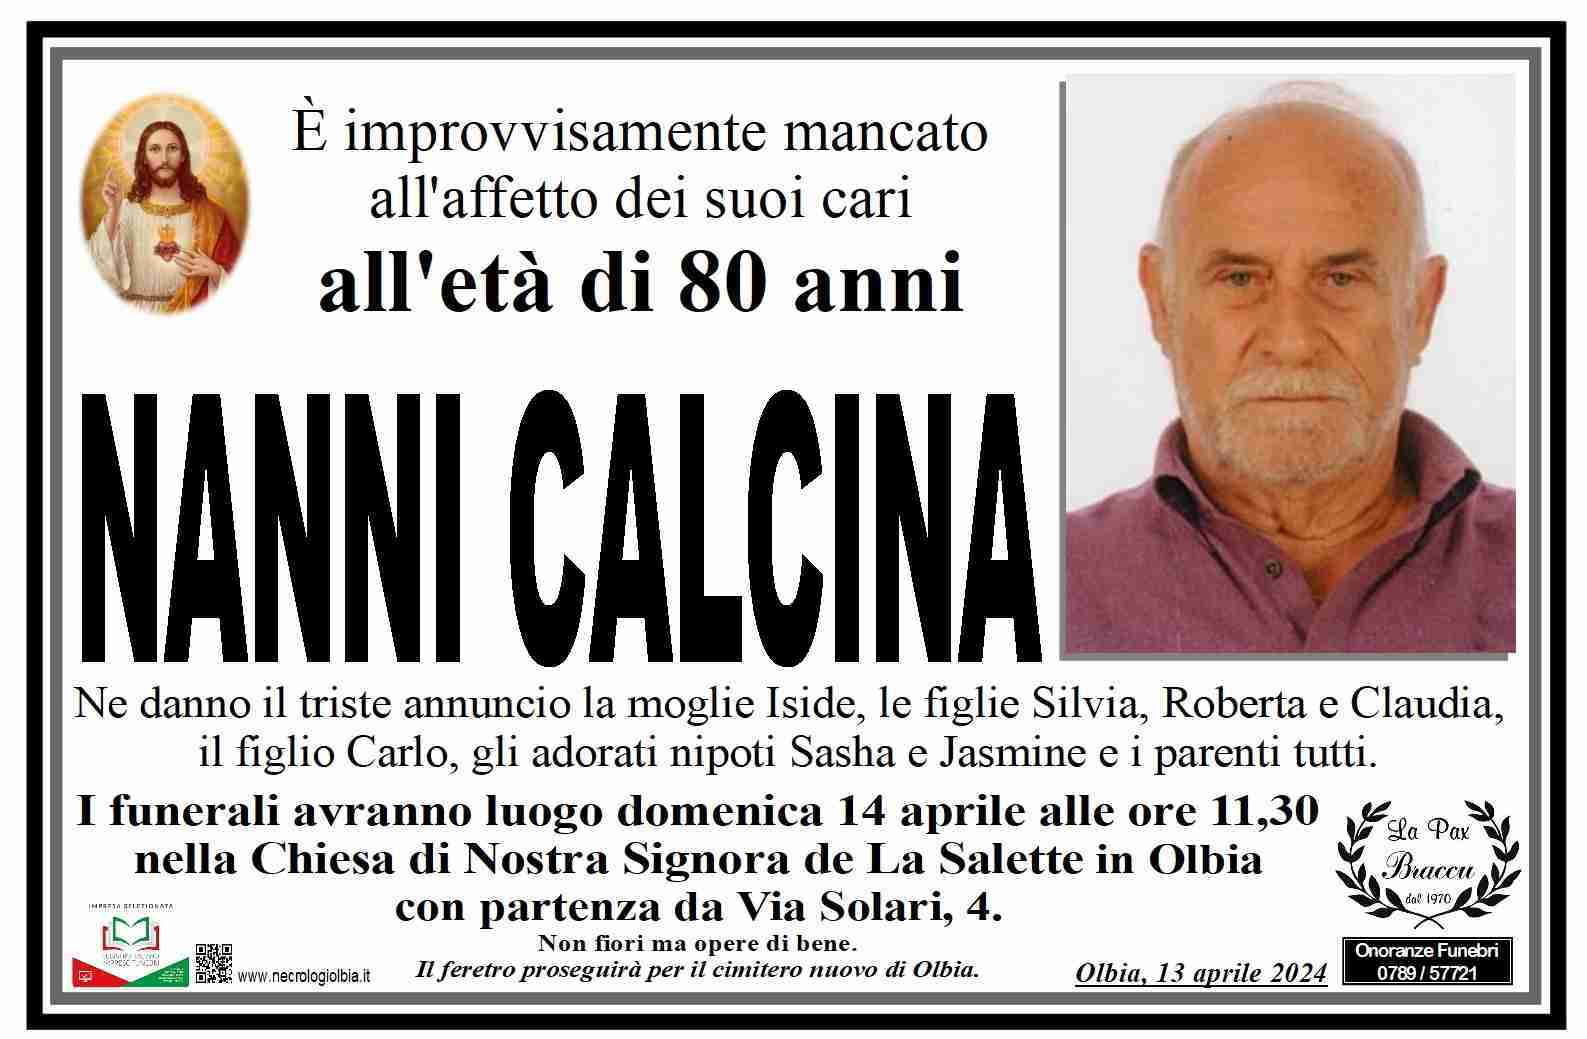 Nanni Calcina